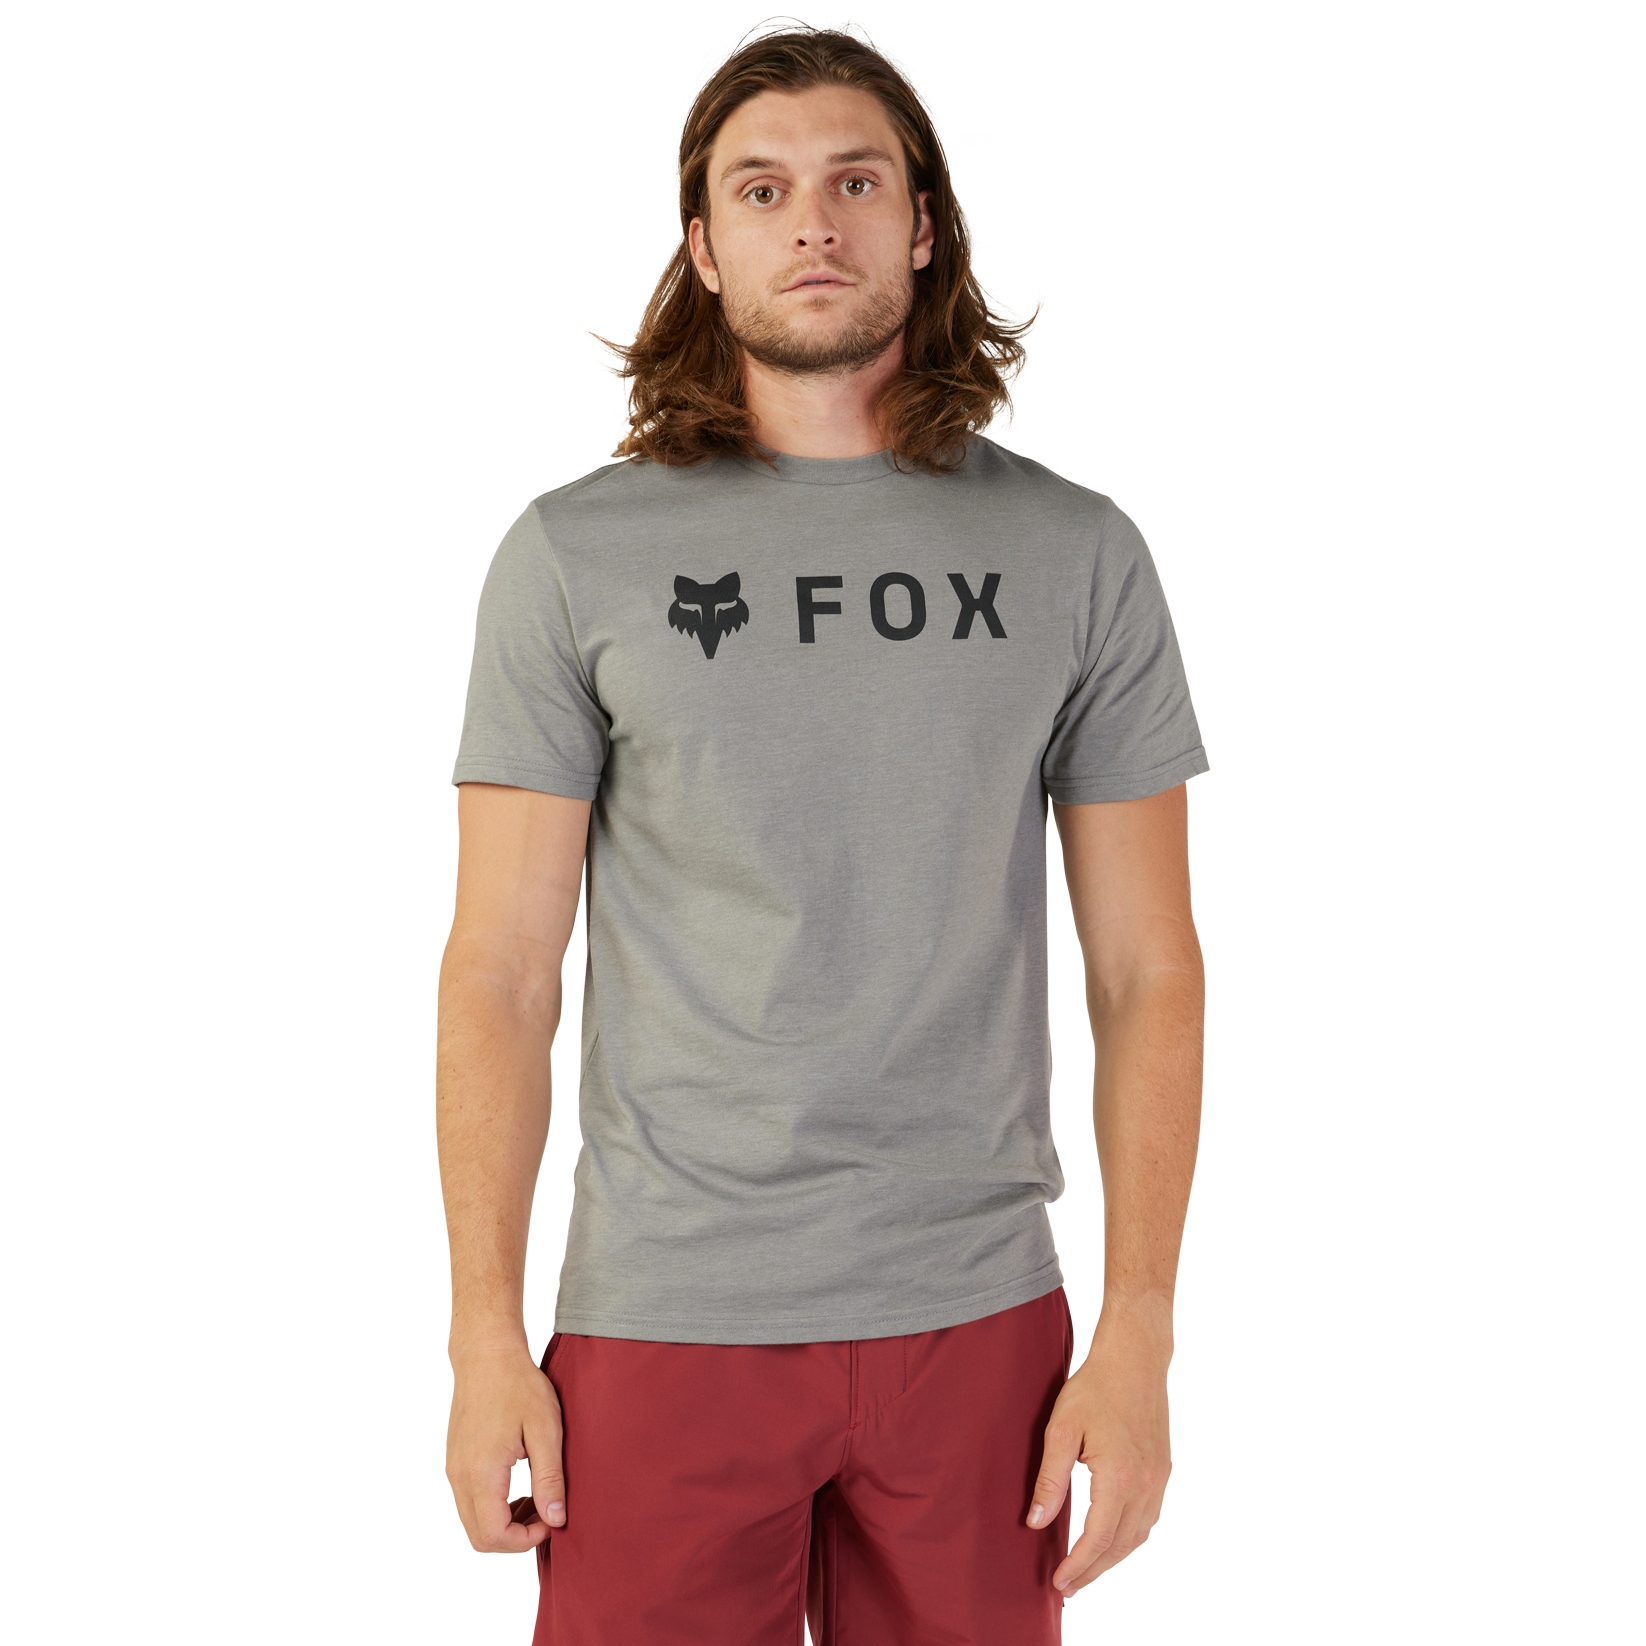 Produktbild von FOX Absolute Premium Kurzarmshirt Herren - heather graphite